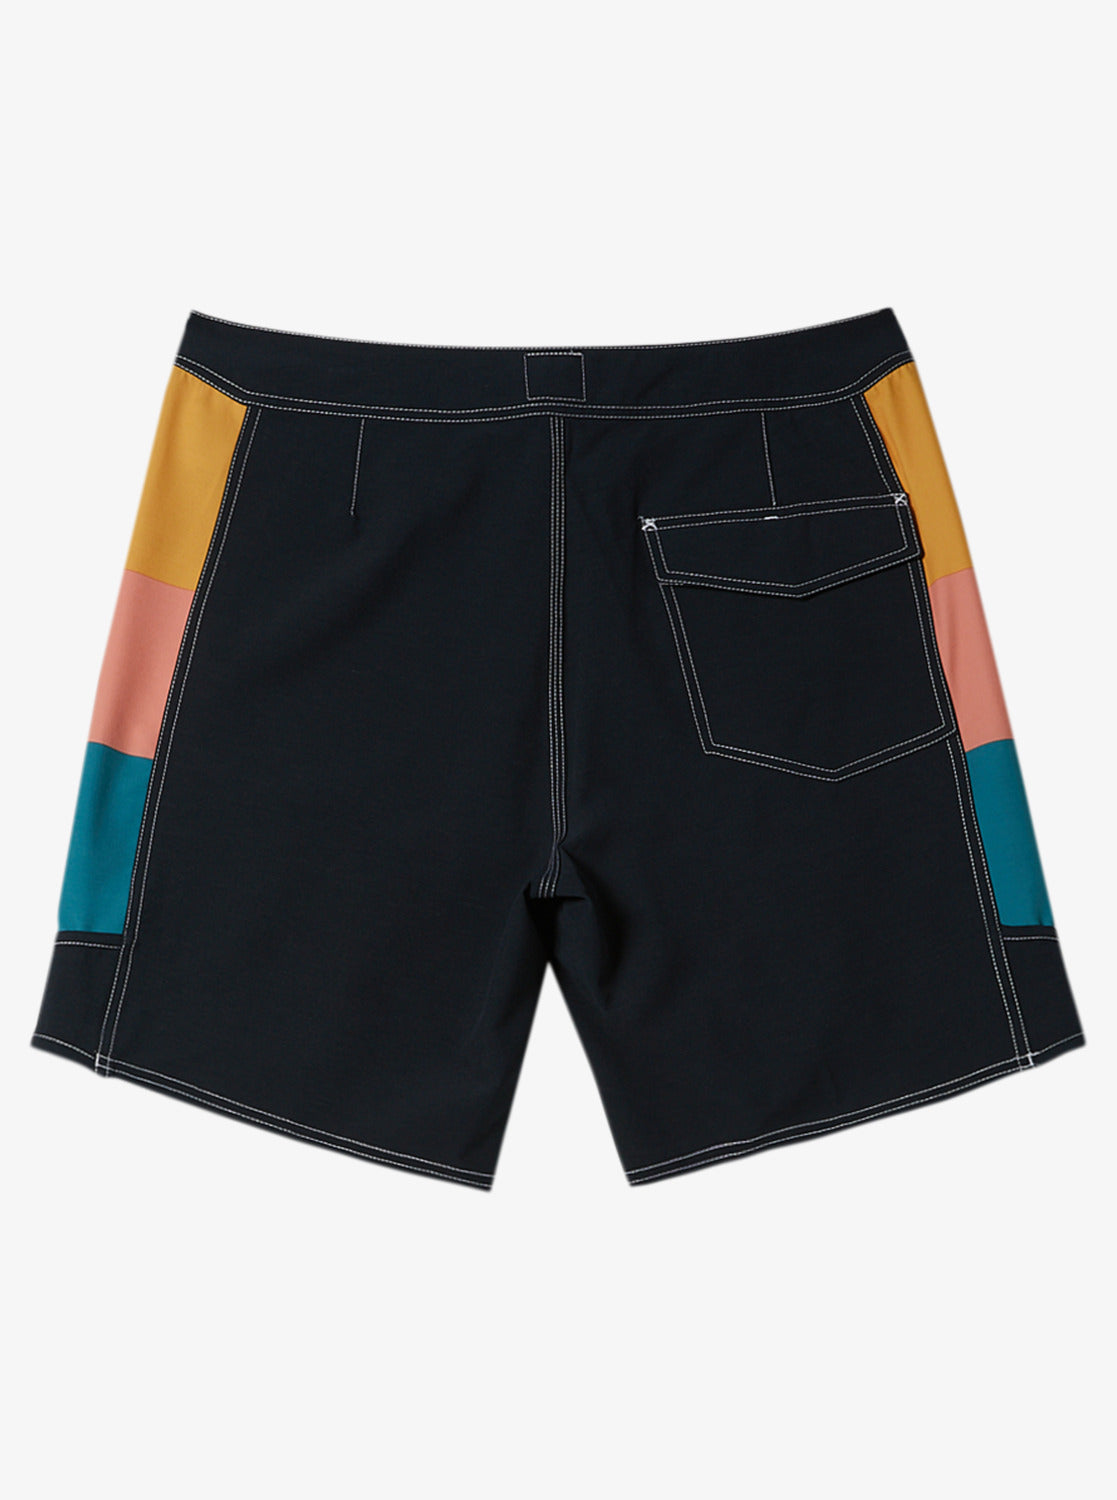 2022年製 新品】 side ARCH colors 【black】 shorts ウェア 